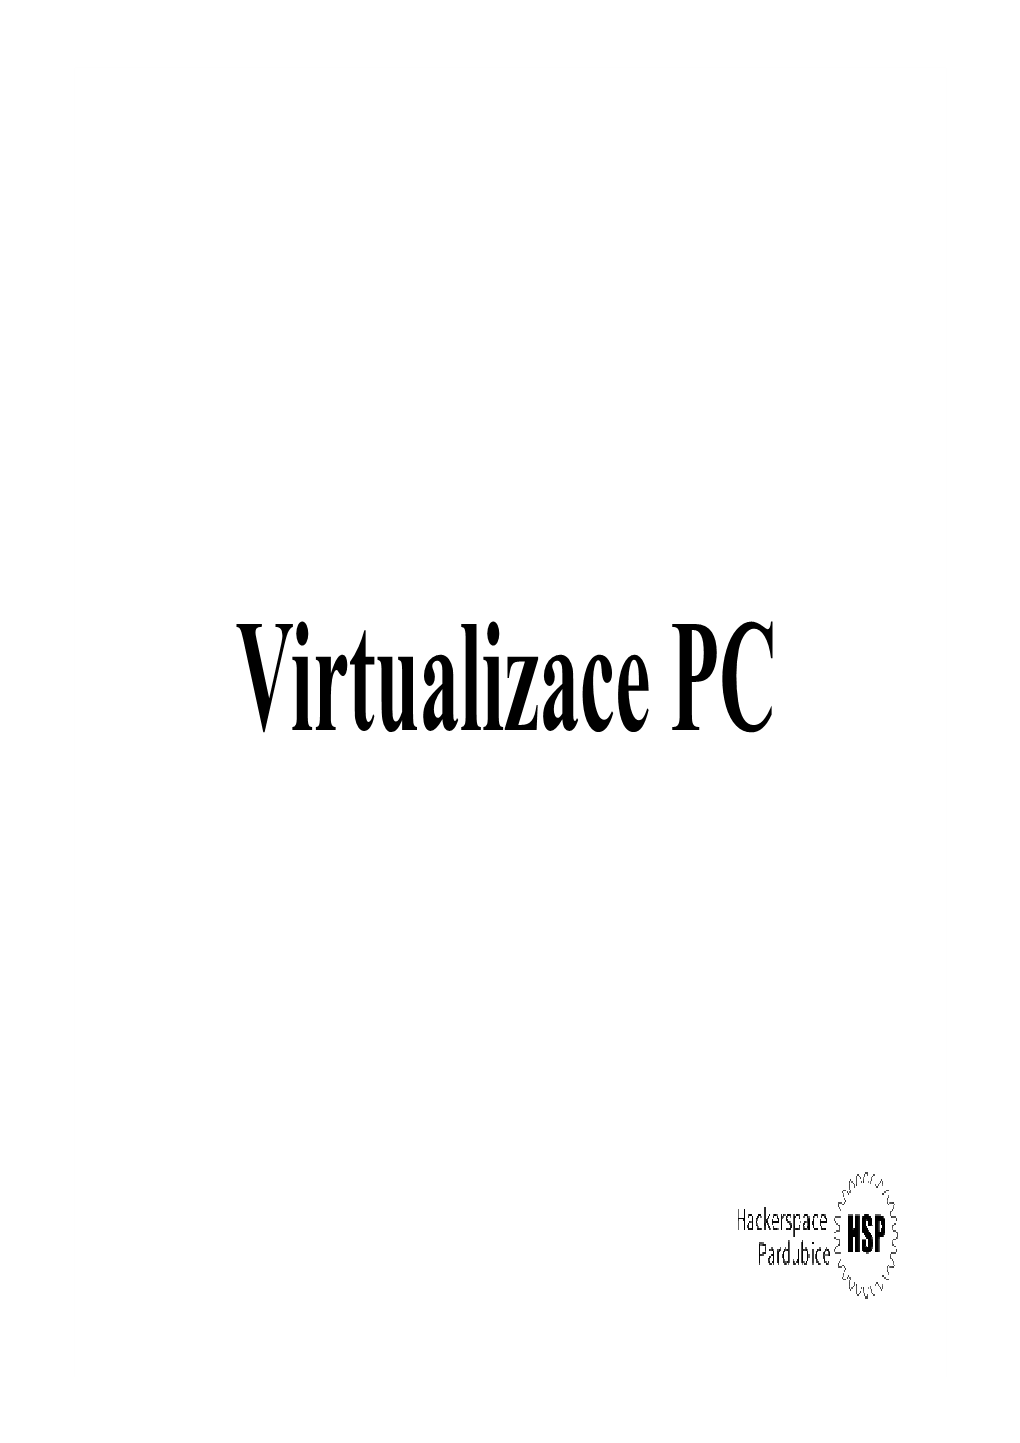 Virtualizace PC Co Je to Virtualizace?